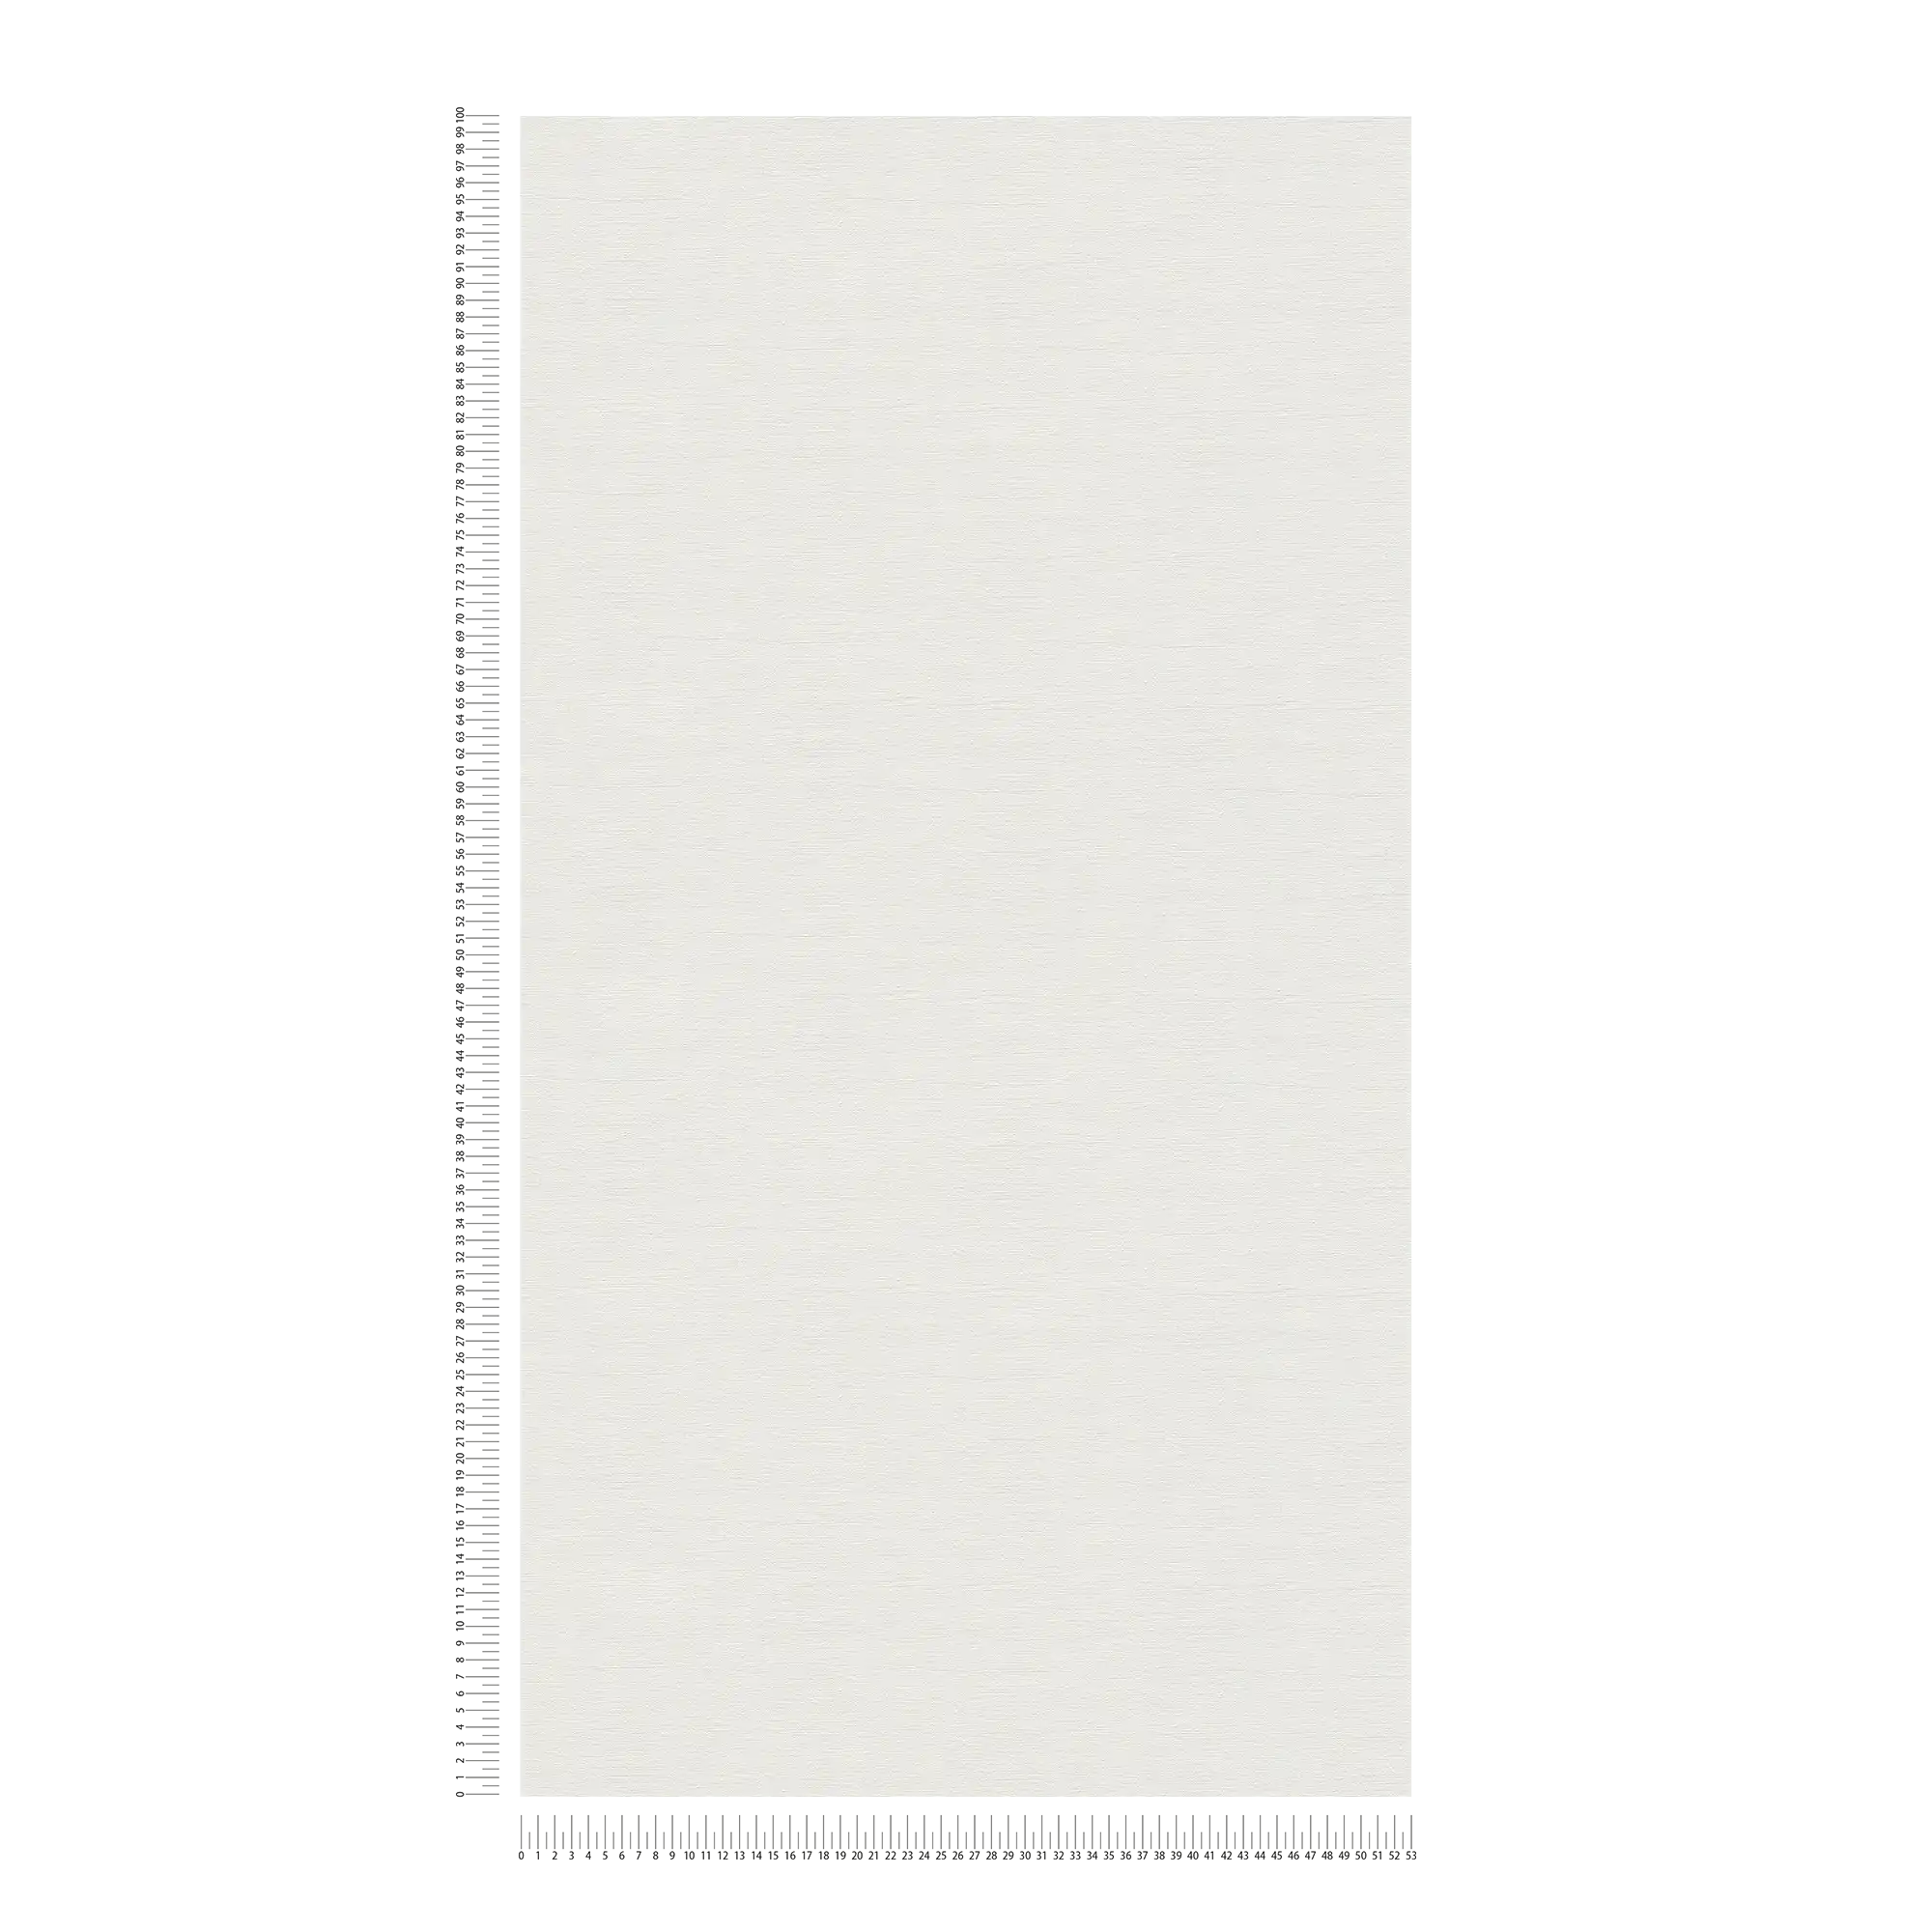             Plain wallpaper with a light textured look - cream, light grey
        